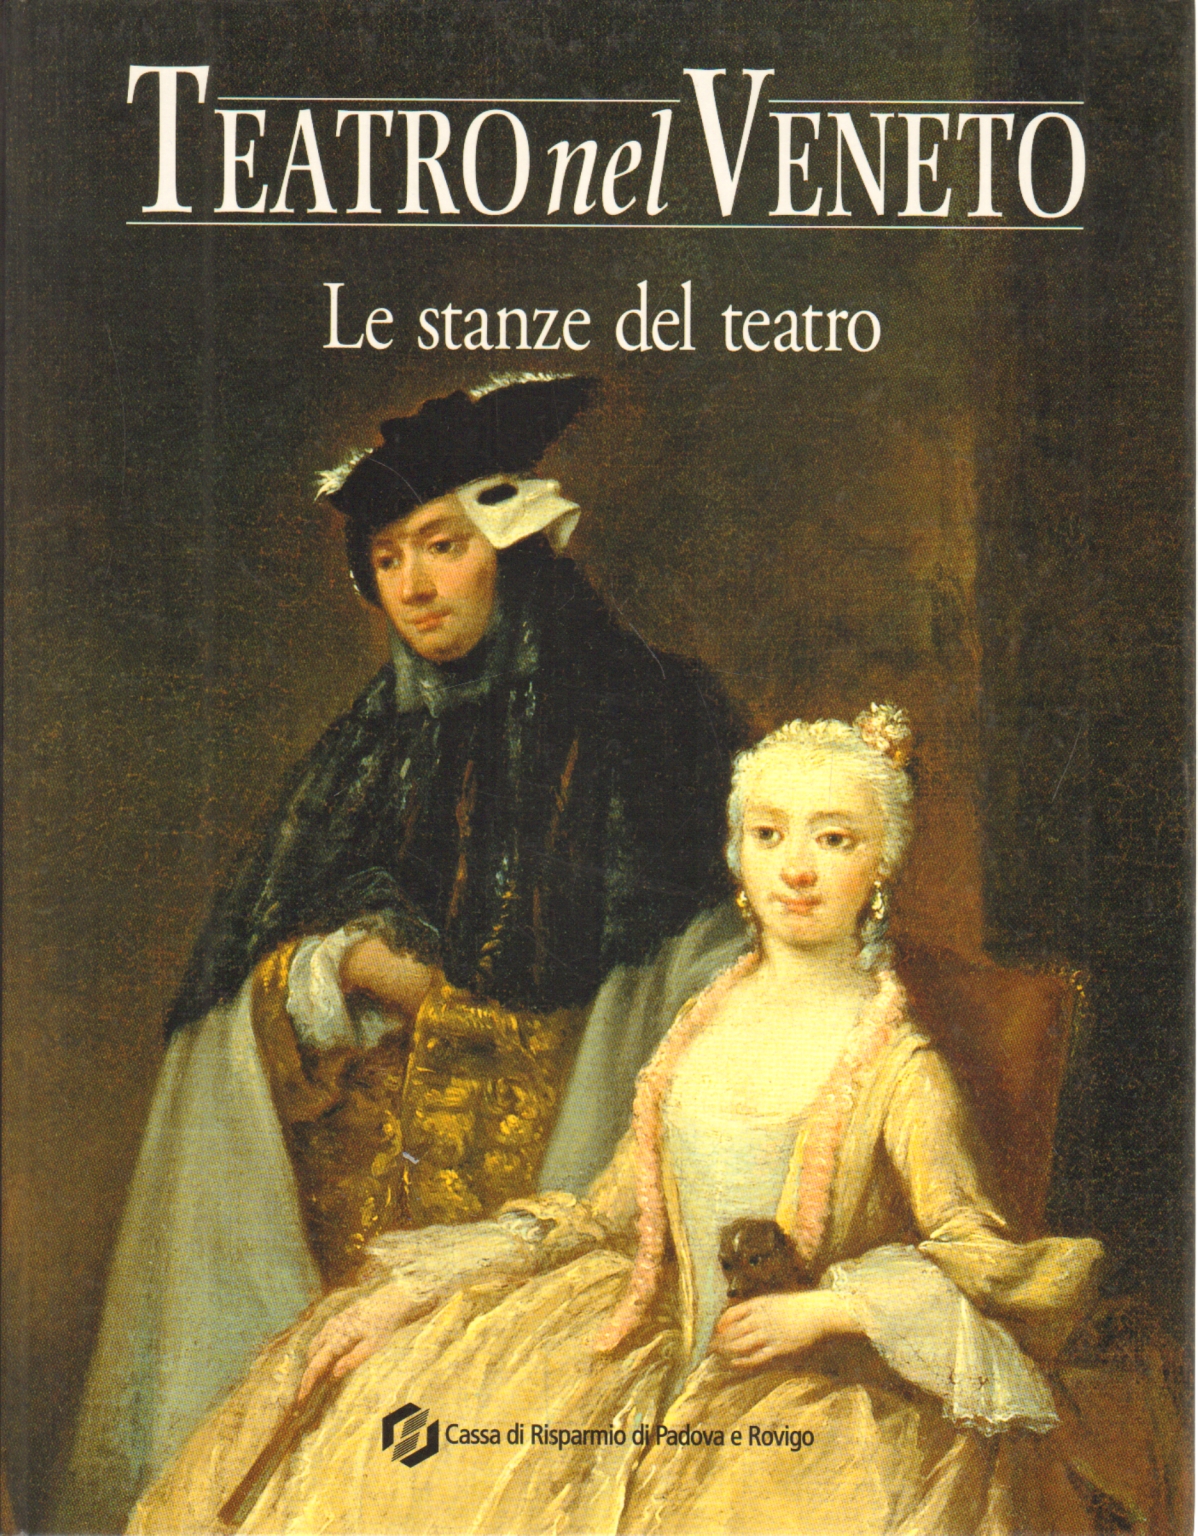 Teatro nel Veneto (Con CD), Carmelo Alberti